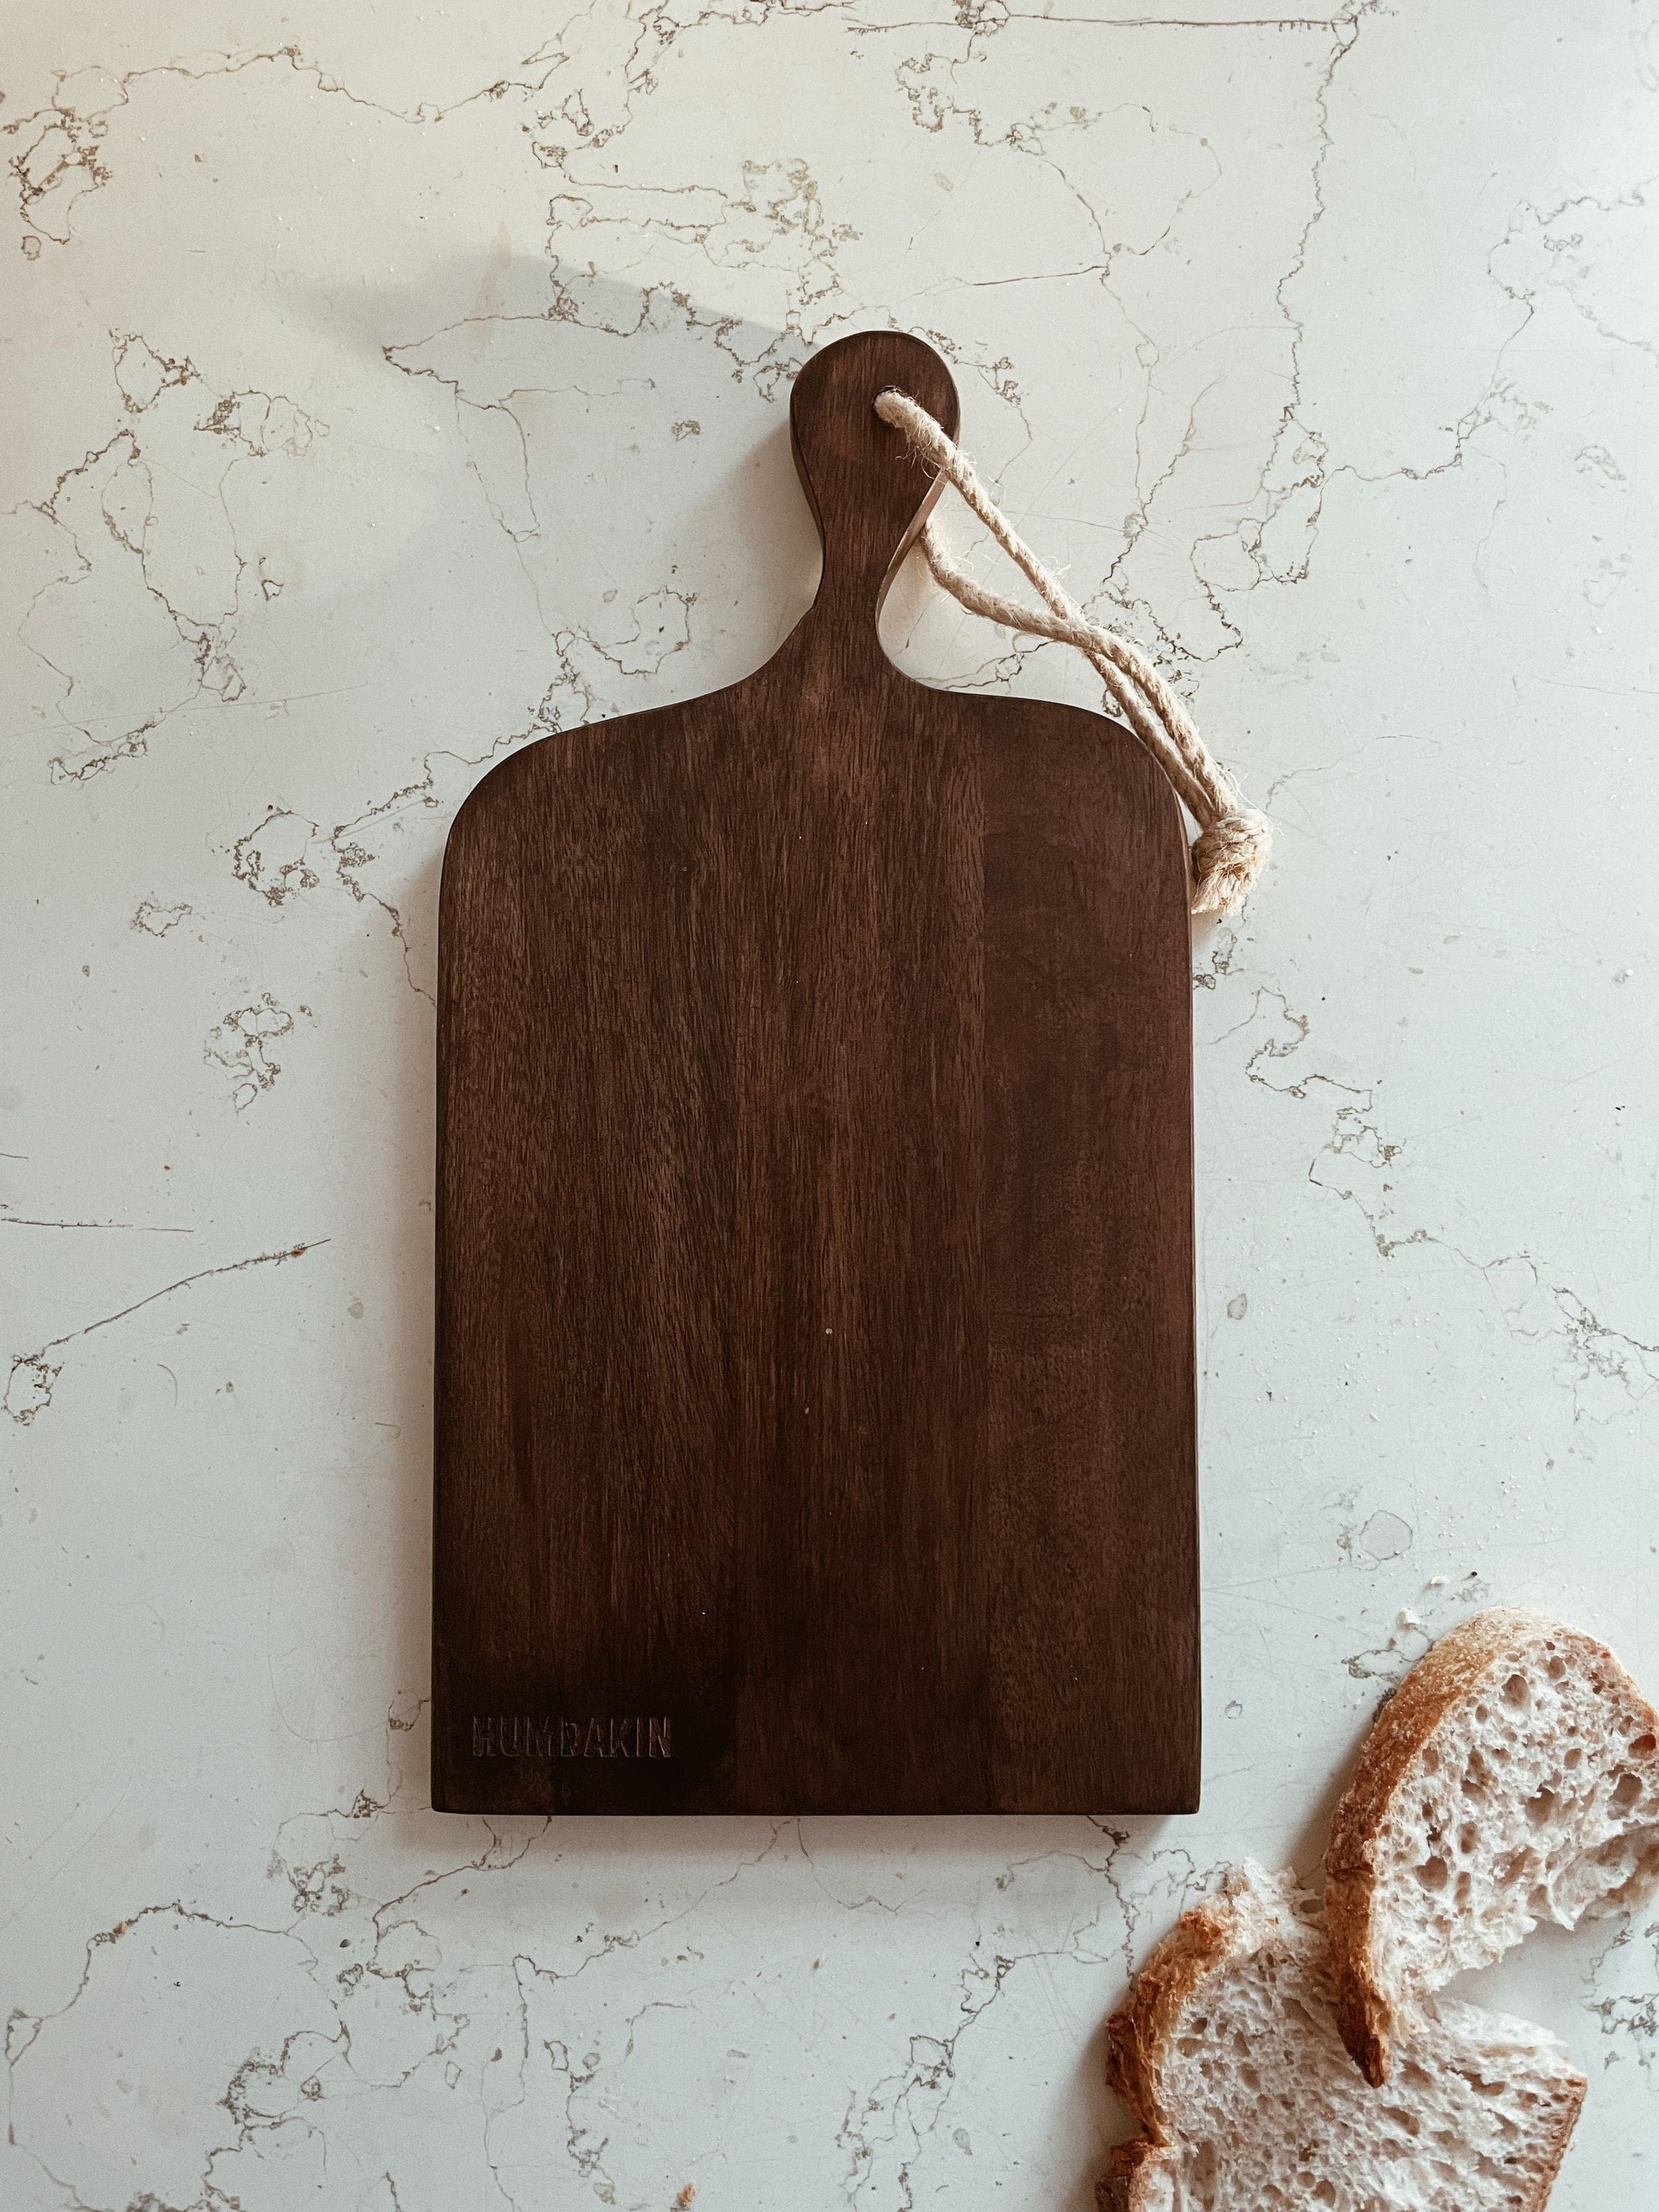 Humdakin Serving Board Made Of Mango Wood, Large